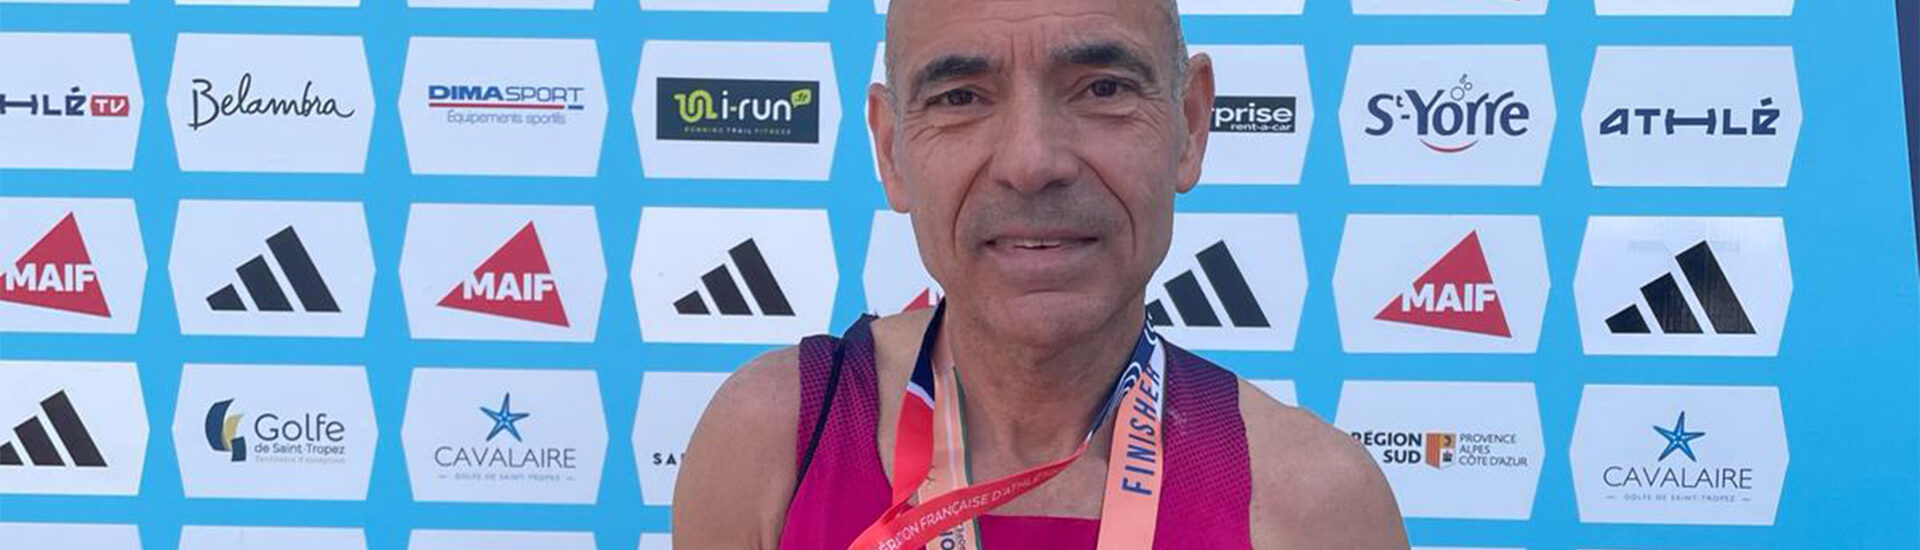 Jean-Paul Carvalho (M4) 3ème au championnat de France de Marathon